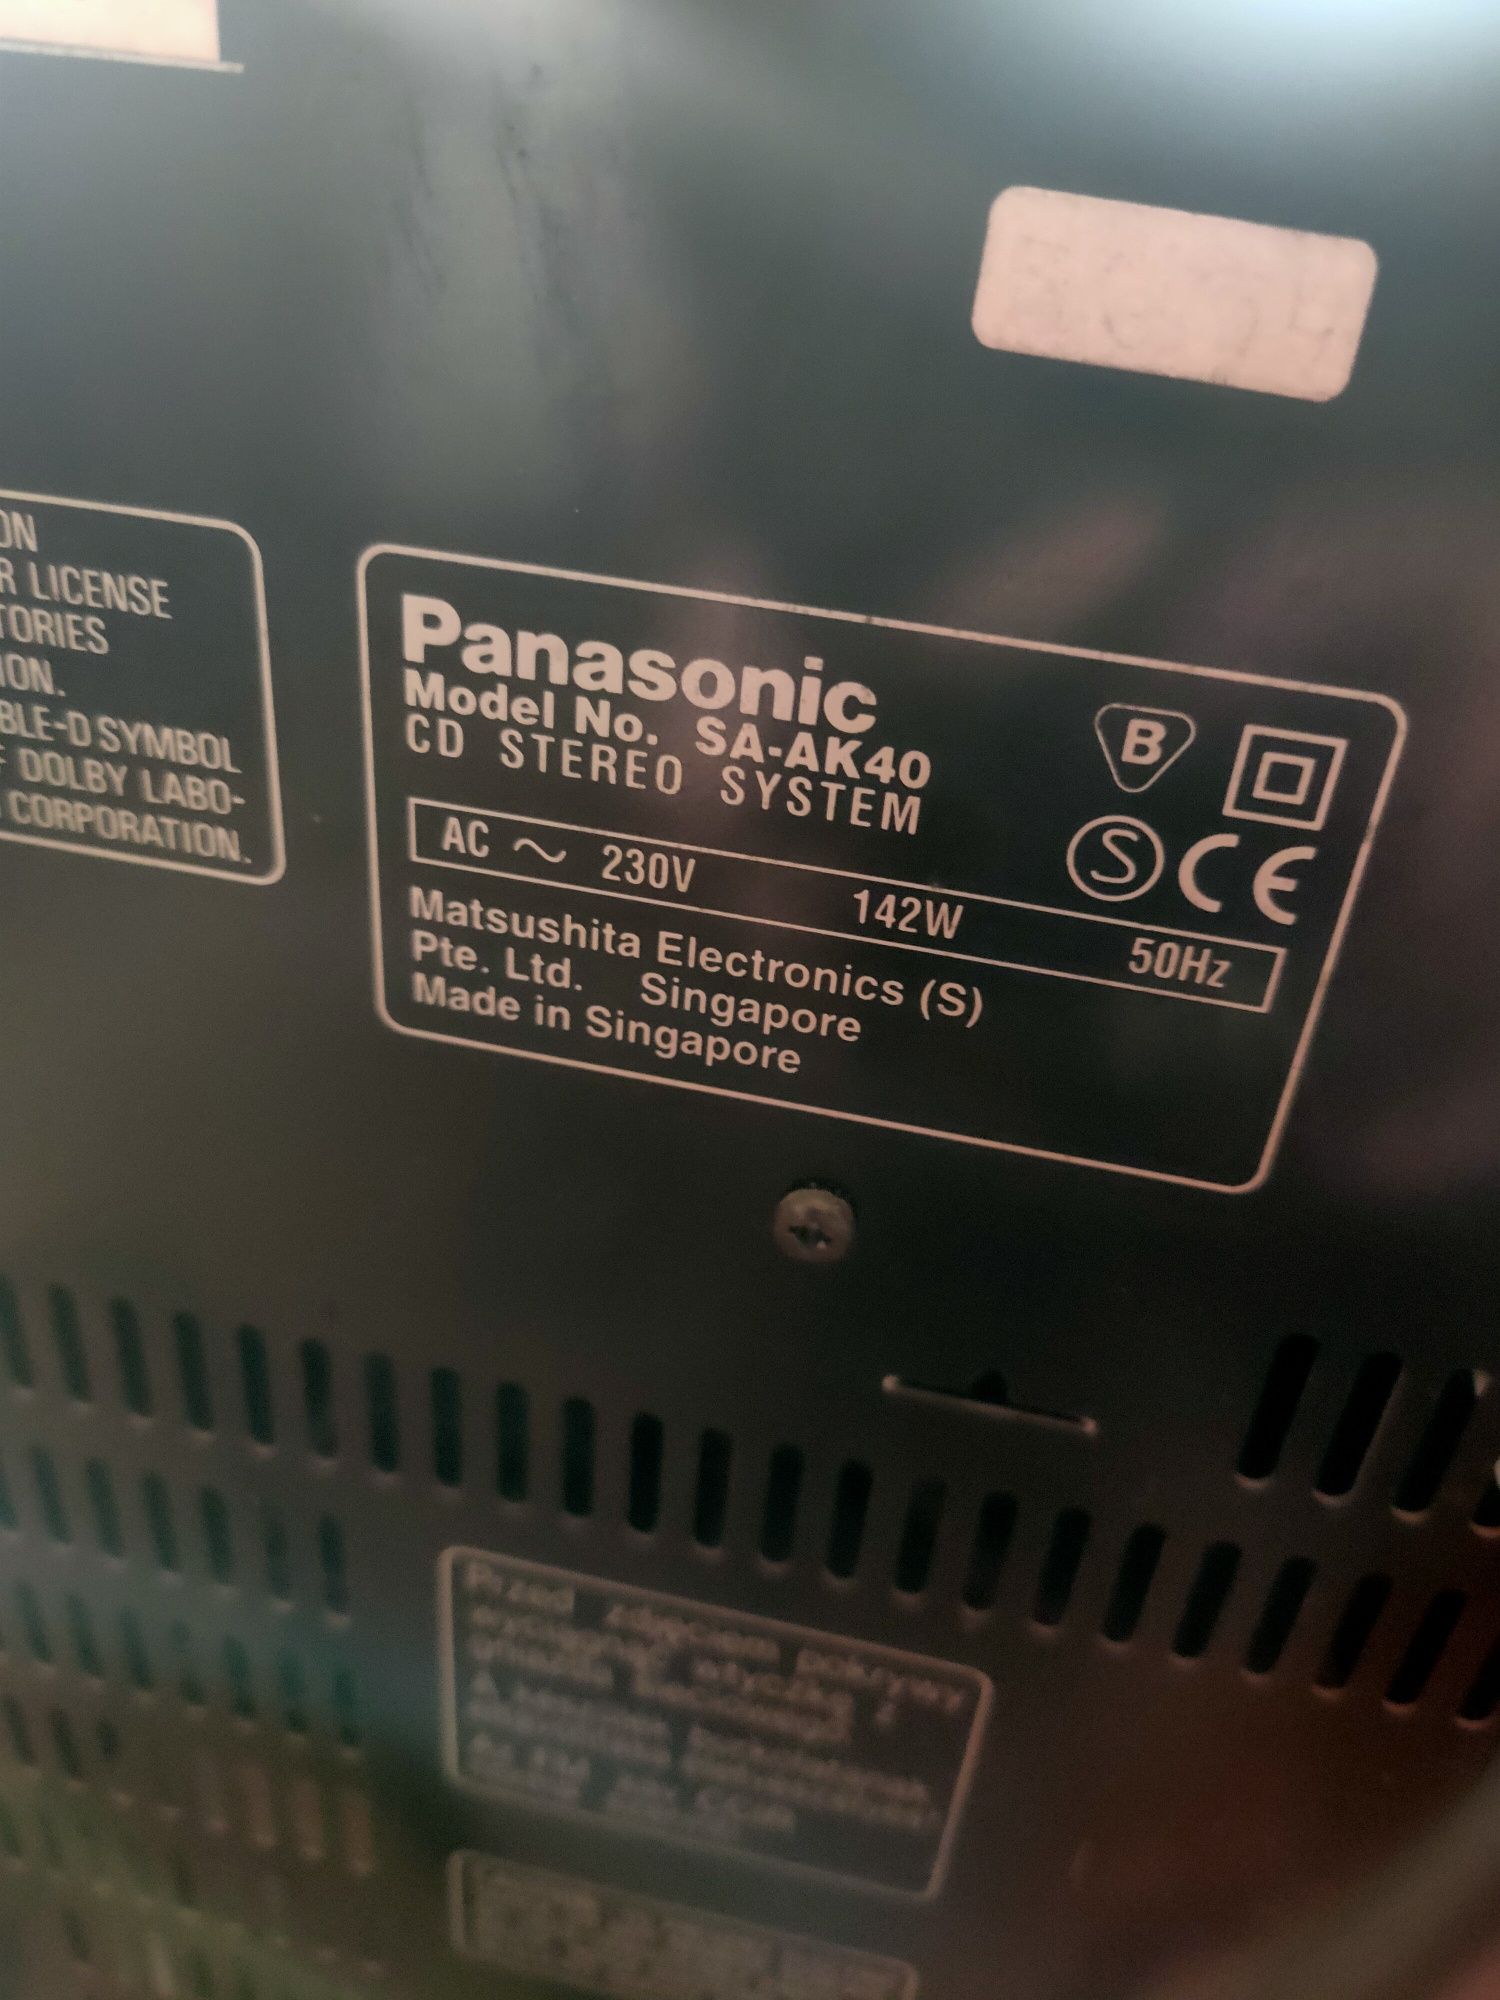 Aparelhagem Panasonic